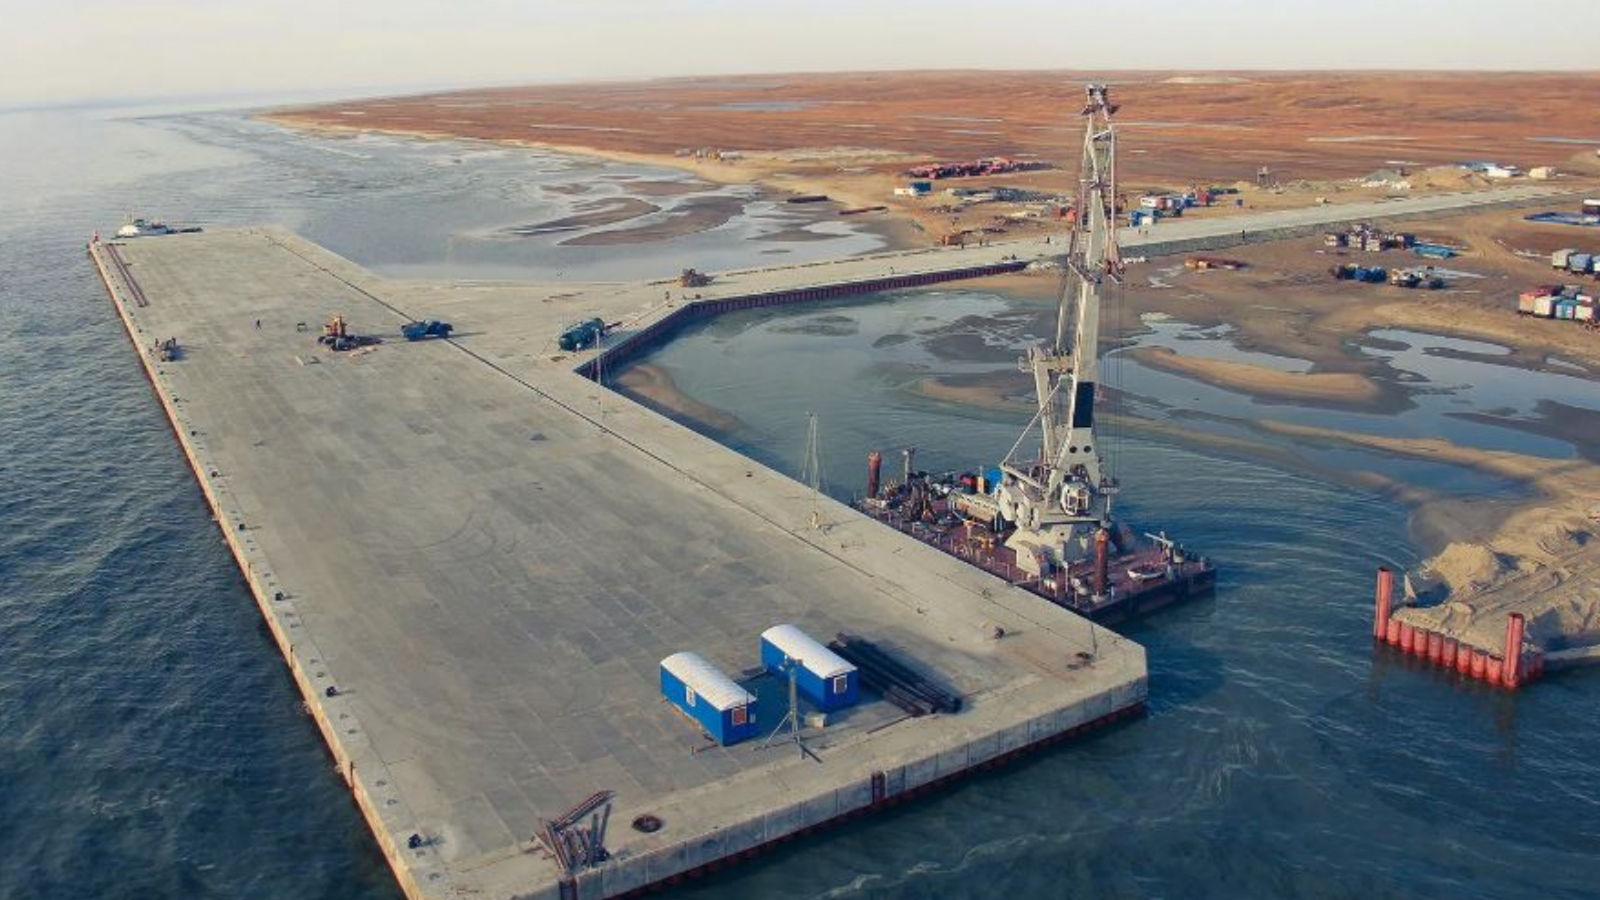 Стоимость дноуглубительных работ для терминала Утренний проекта Арктик СПГ-2 составит 37,5 млрд руб.